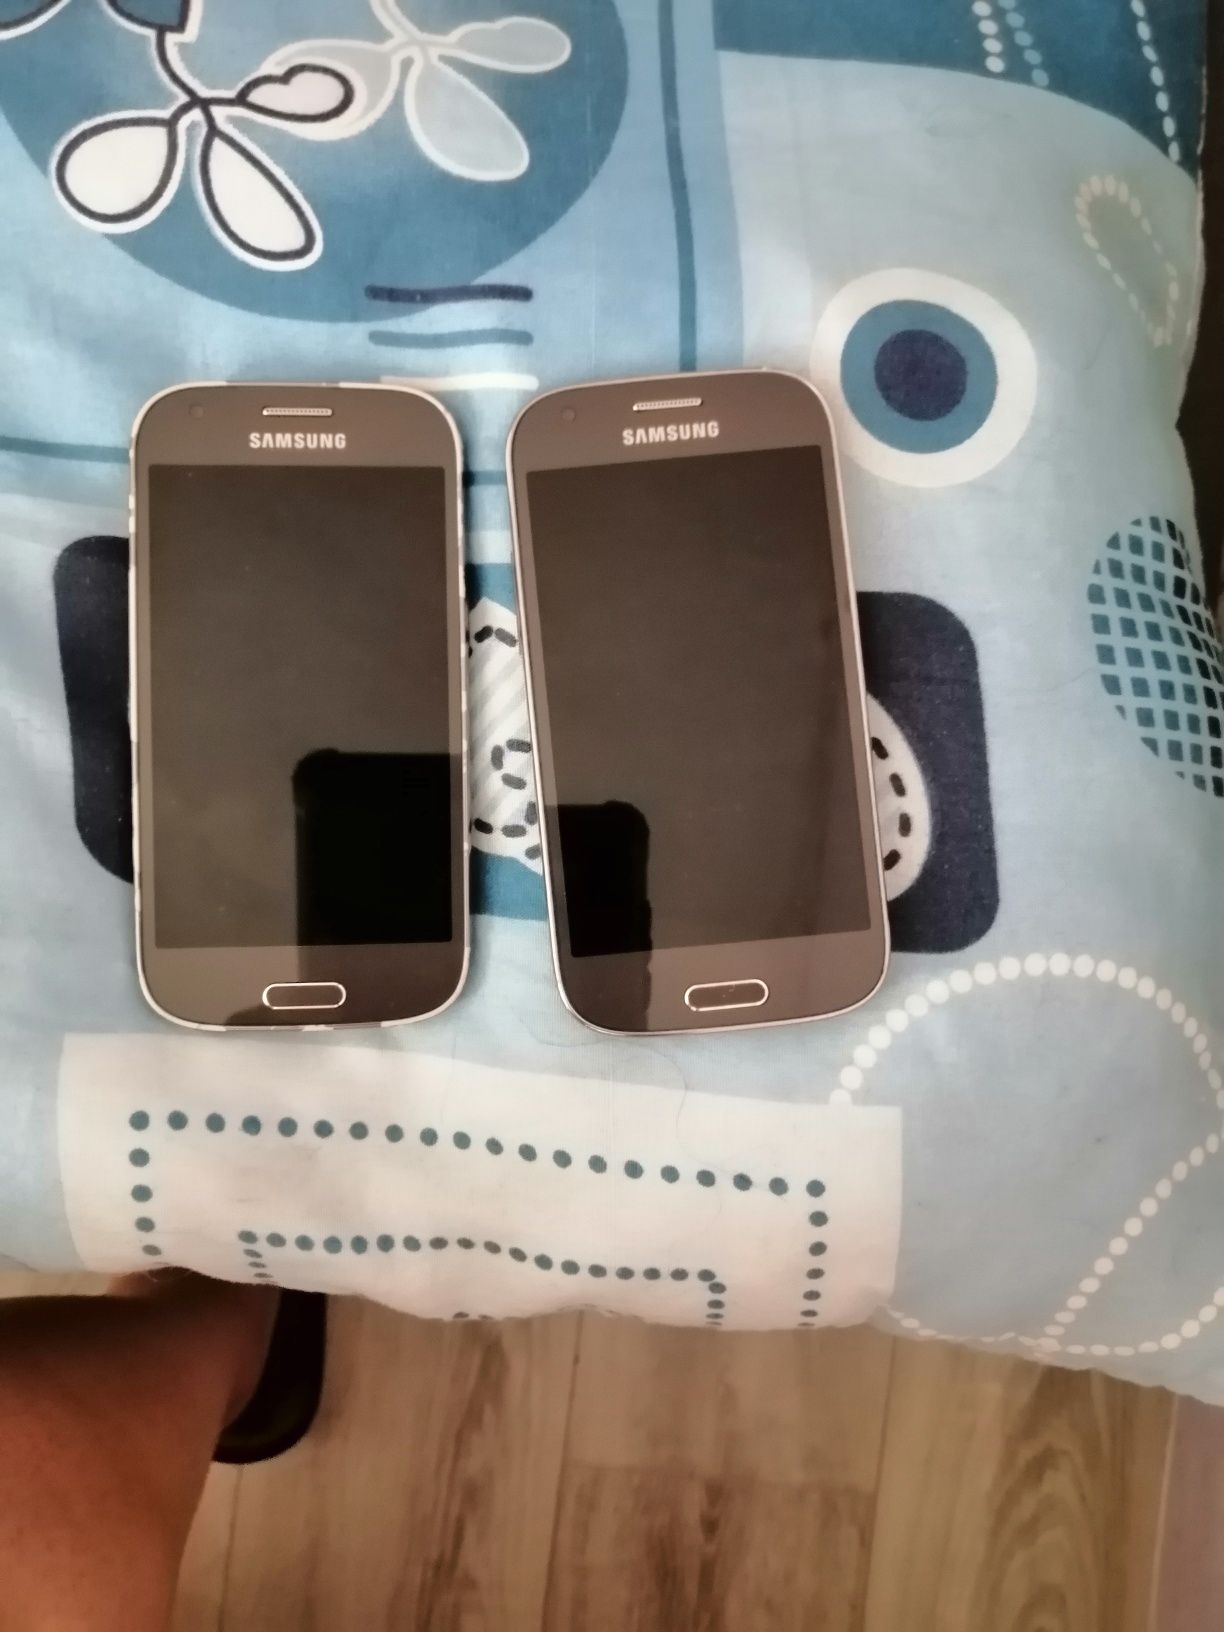 2 Telefony samsung galaxy ace4, jeden sprawny